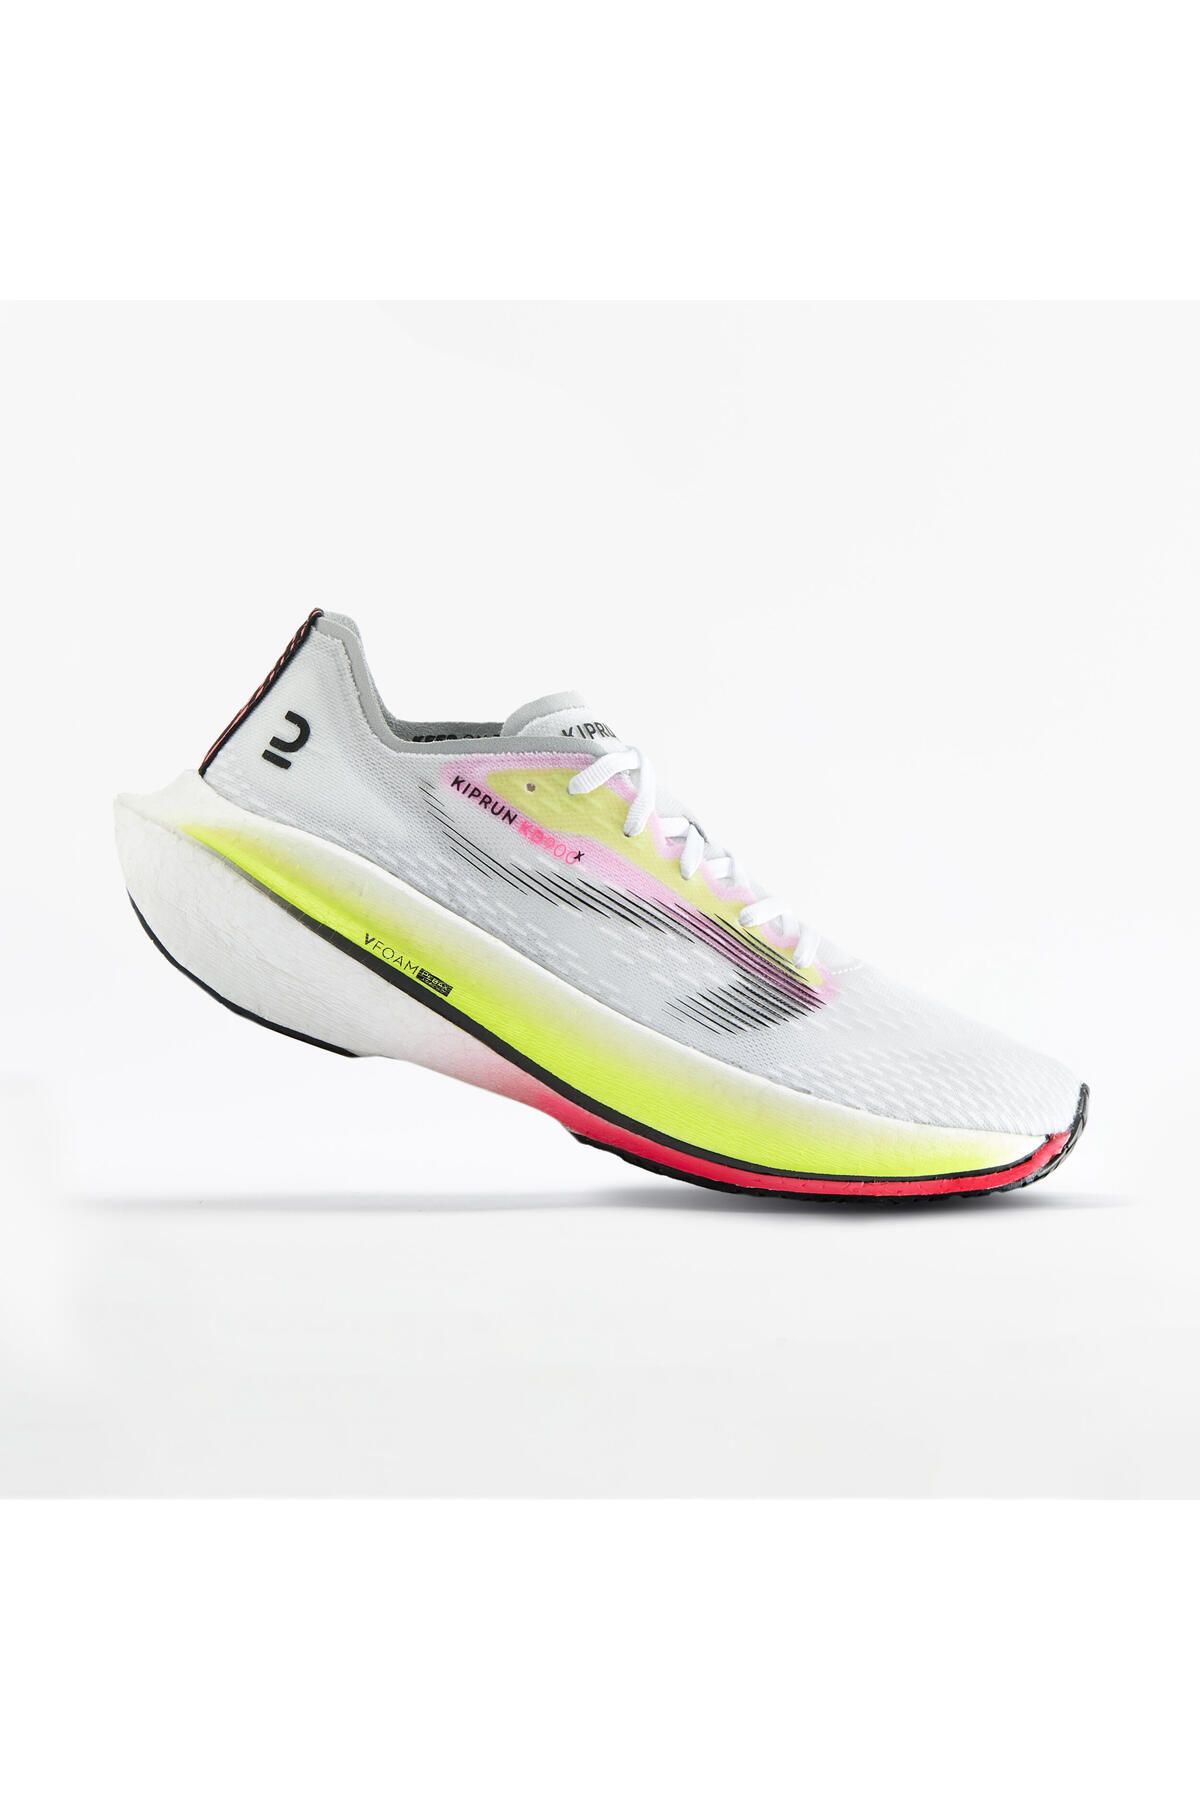 Decathlon Kadın Karbon Plakalı Yol Koşu Ayakkabısı - Beyaz - Kd900x